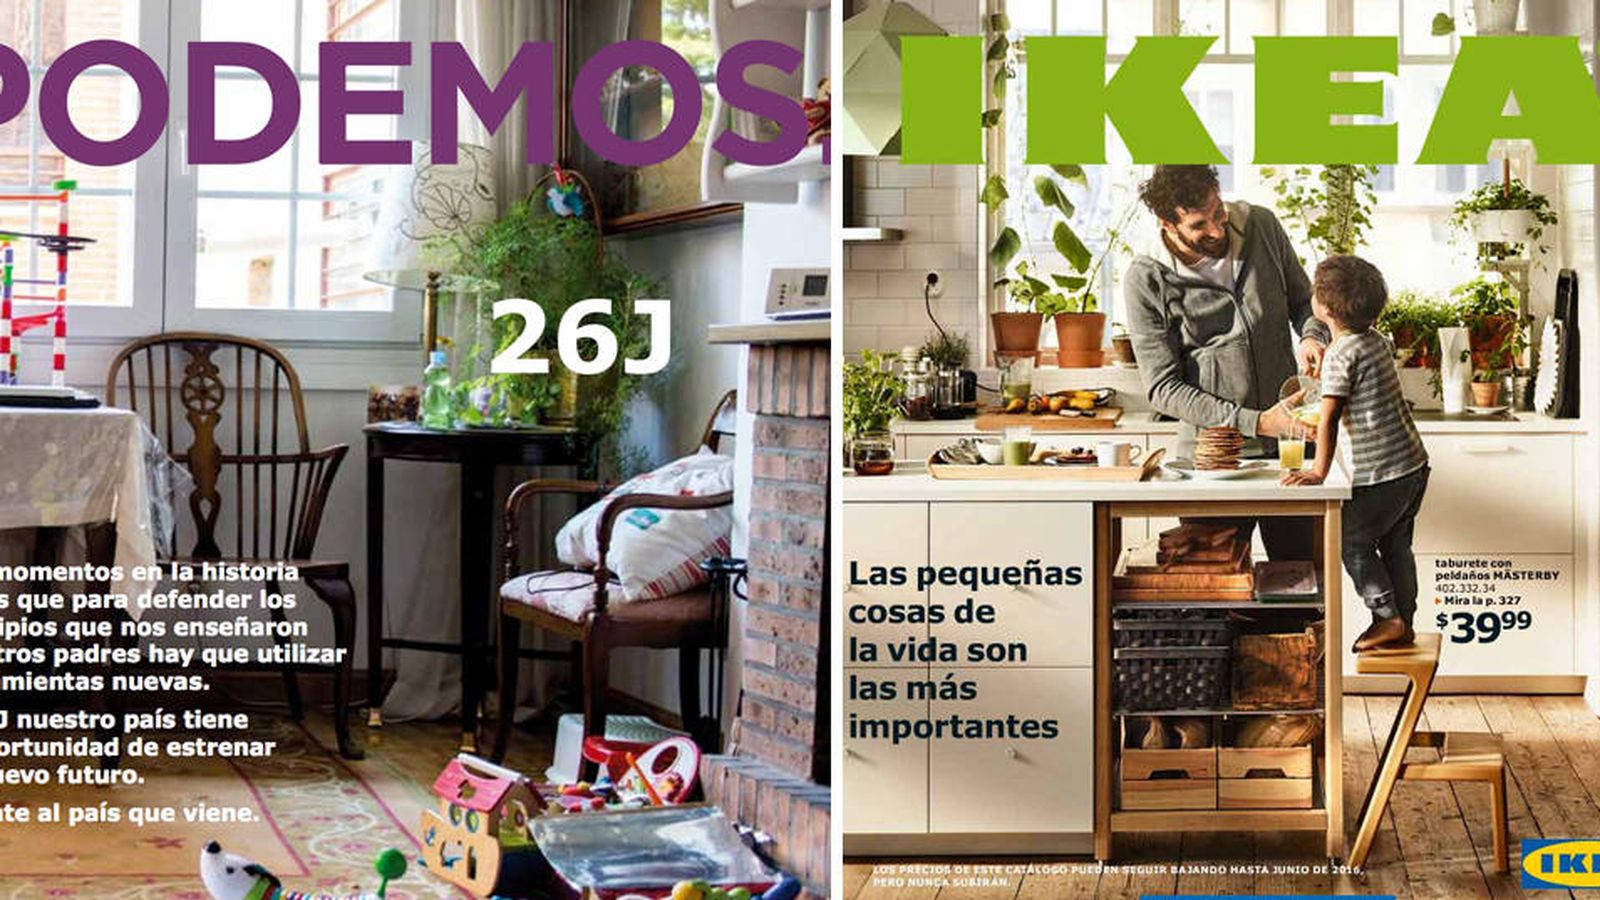 Foto: Programa de Podemos y catálogo de Ikea: ¿Parecidos razonables? (EC)